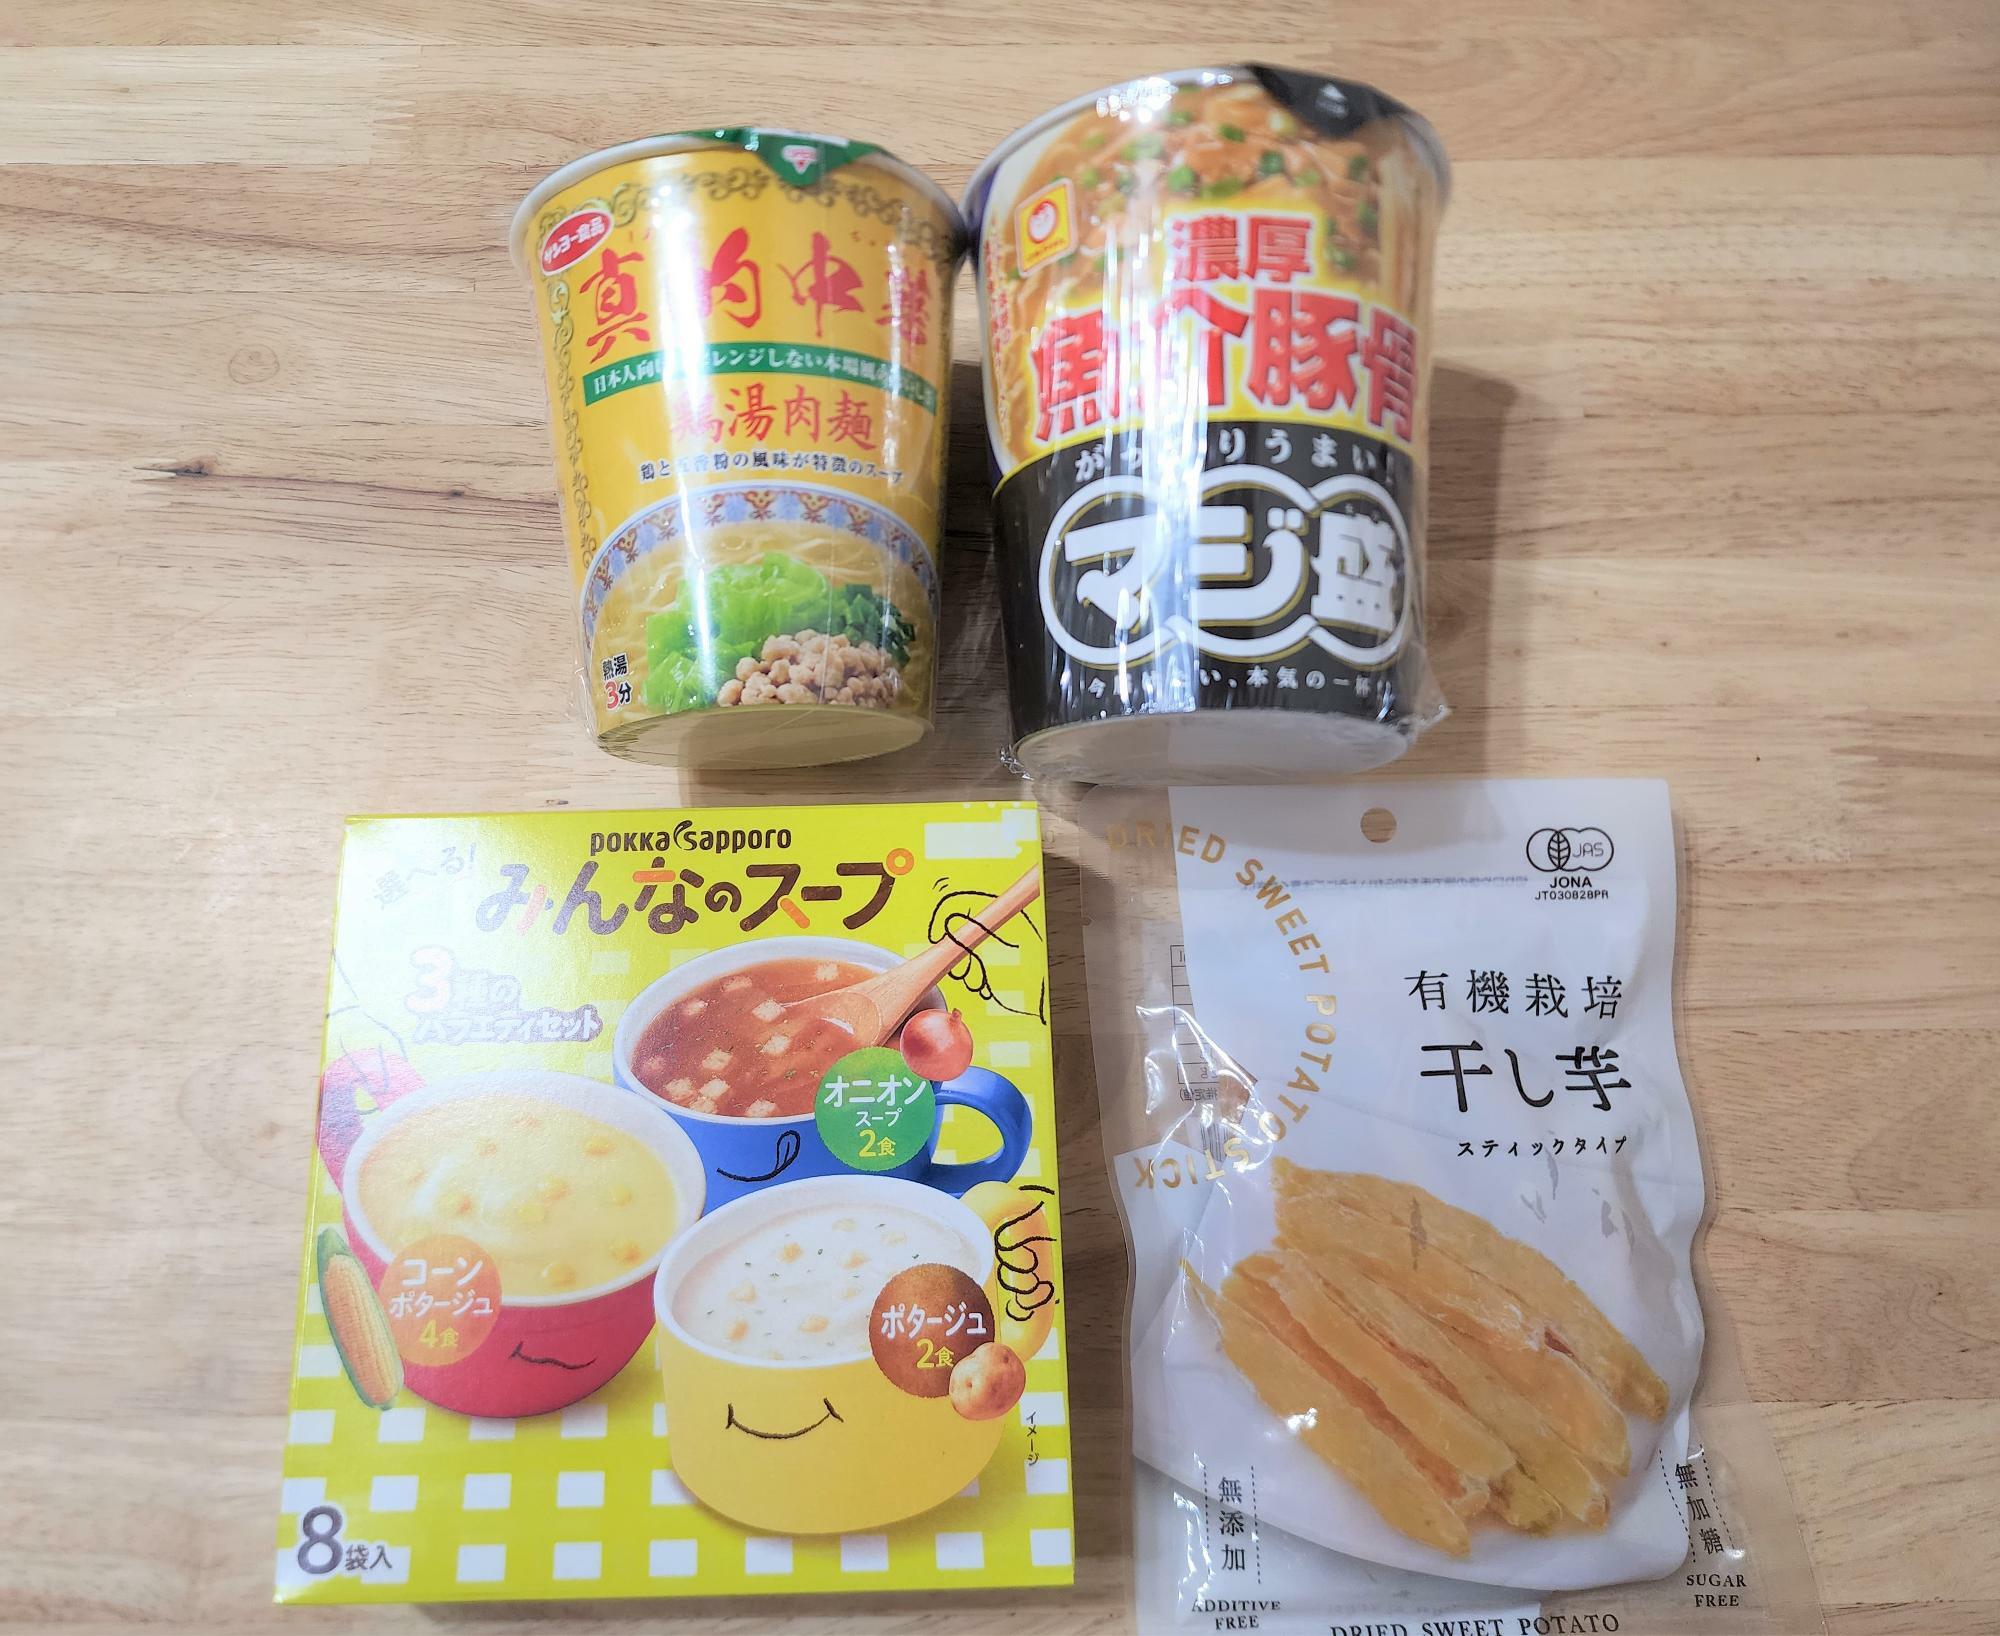 閉店セール実施中の「TOAmart  徳島川内店」で購入した商品（食品なので割引対象外）。